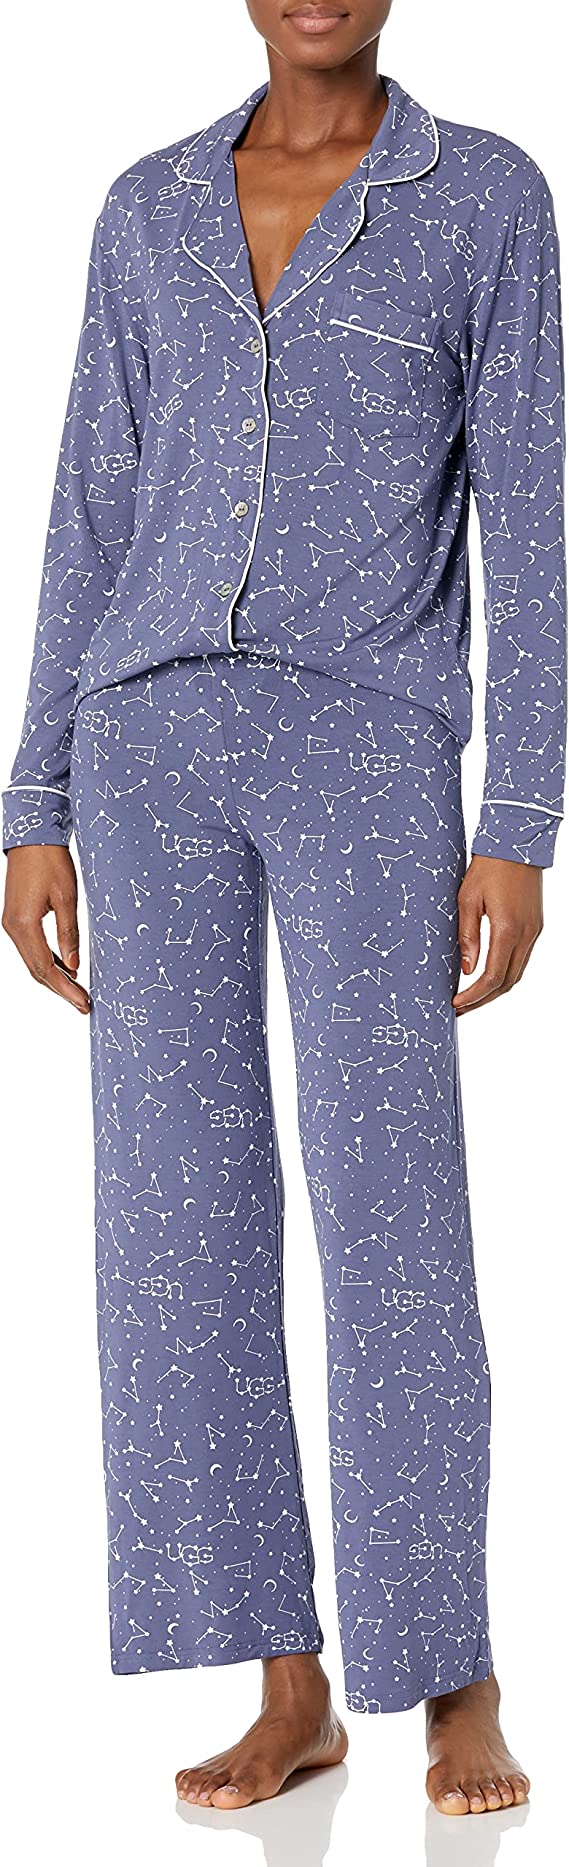 Luxury Pajamas